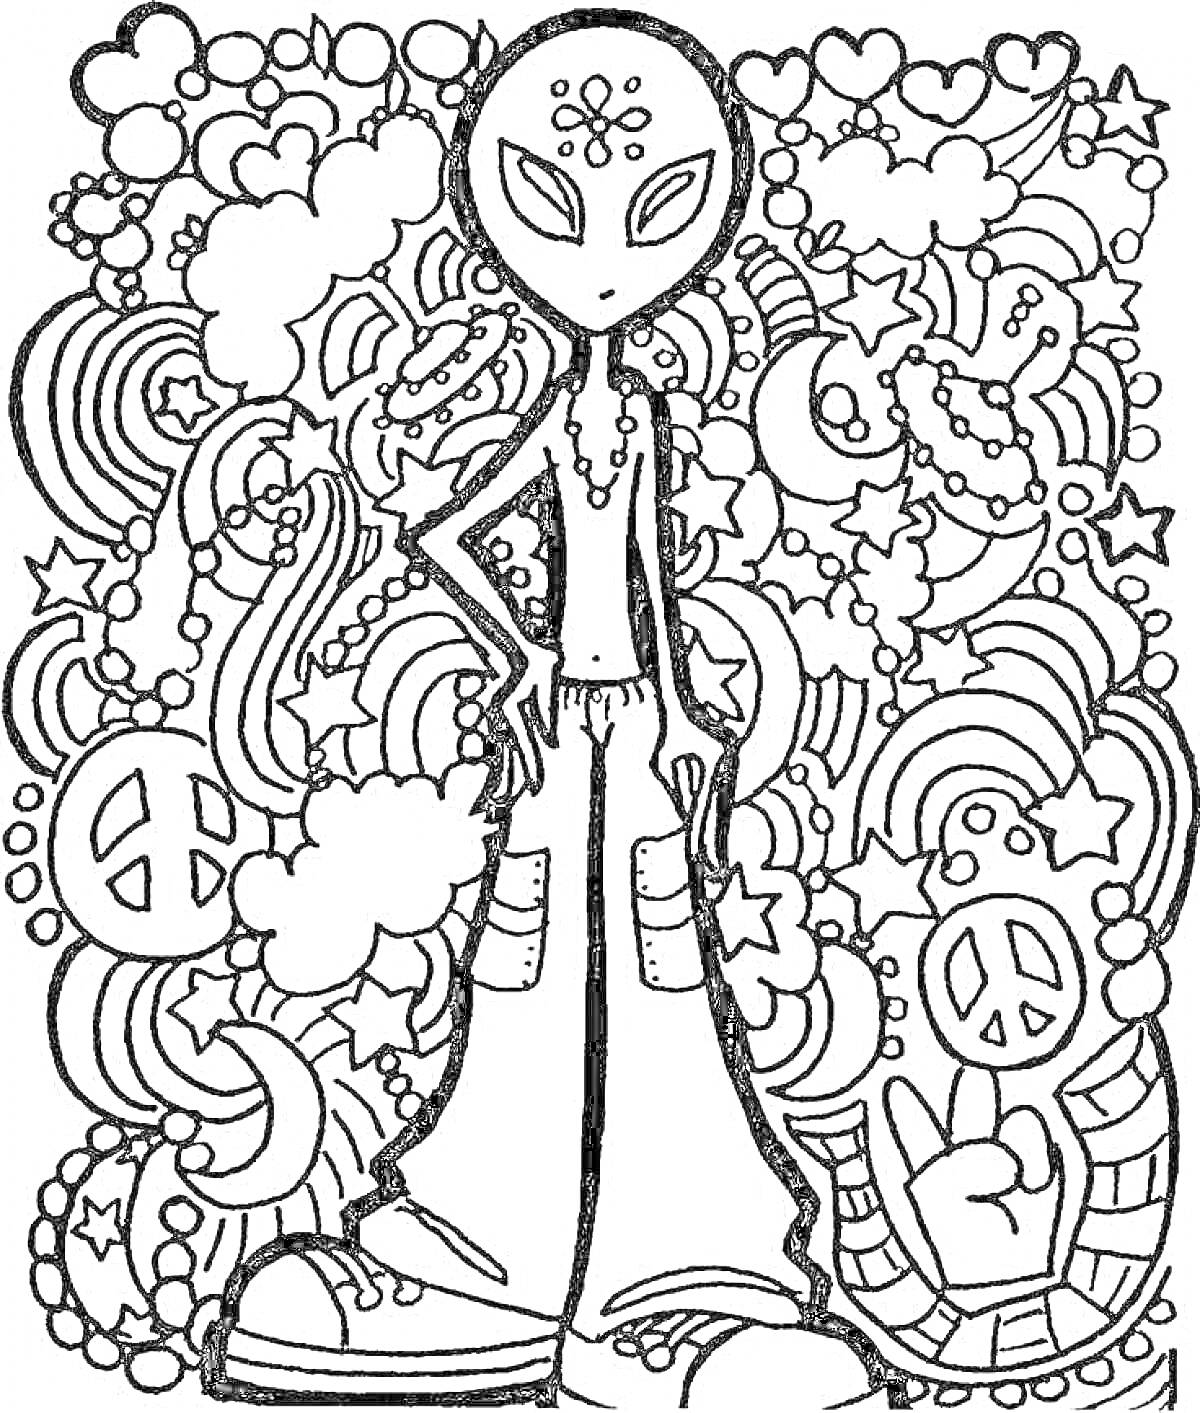 Раскраска Инопланетянин в стиле хиппи с символами мира, облаками, сердцами, звездами и радугами